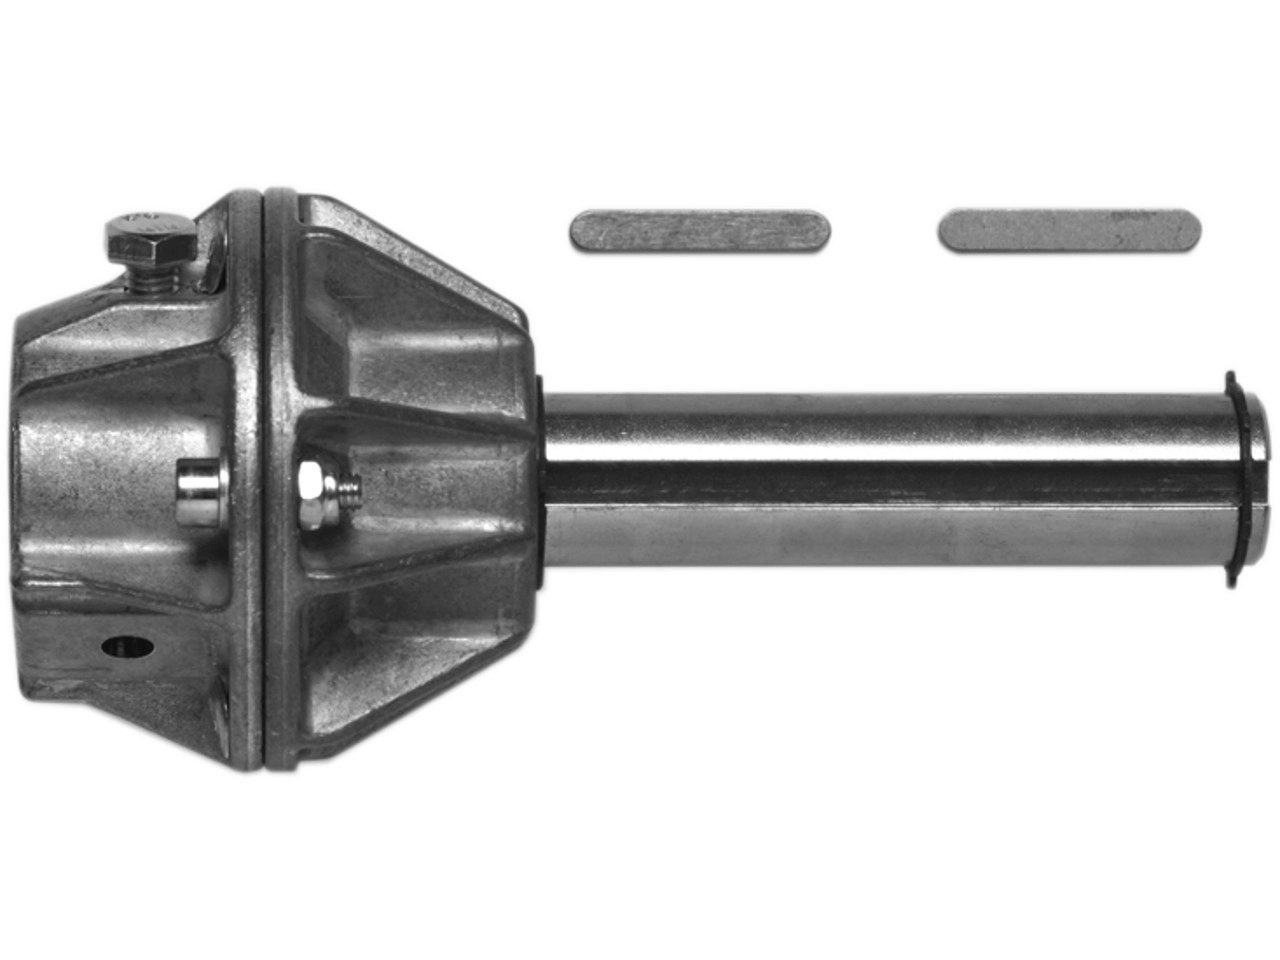 Wellenadapter Steckwelle 25.4mm mit Adapter für Federwelle 31.75mm mit Nut